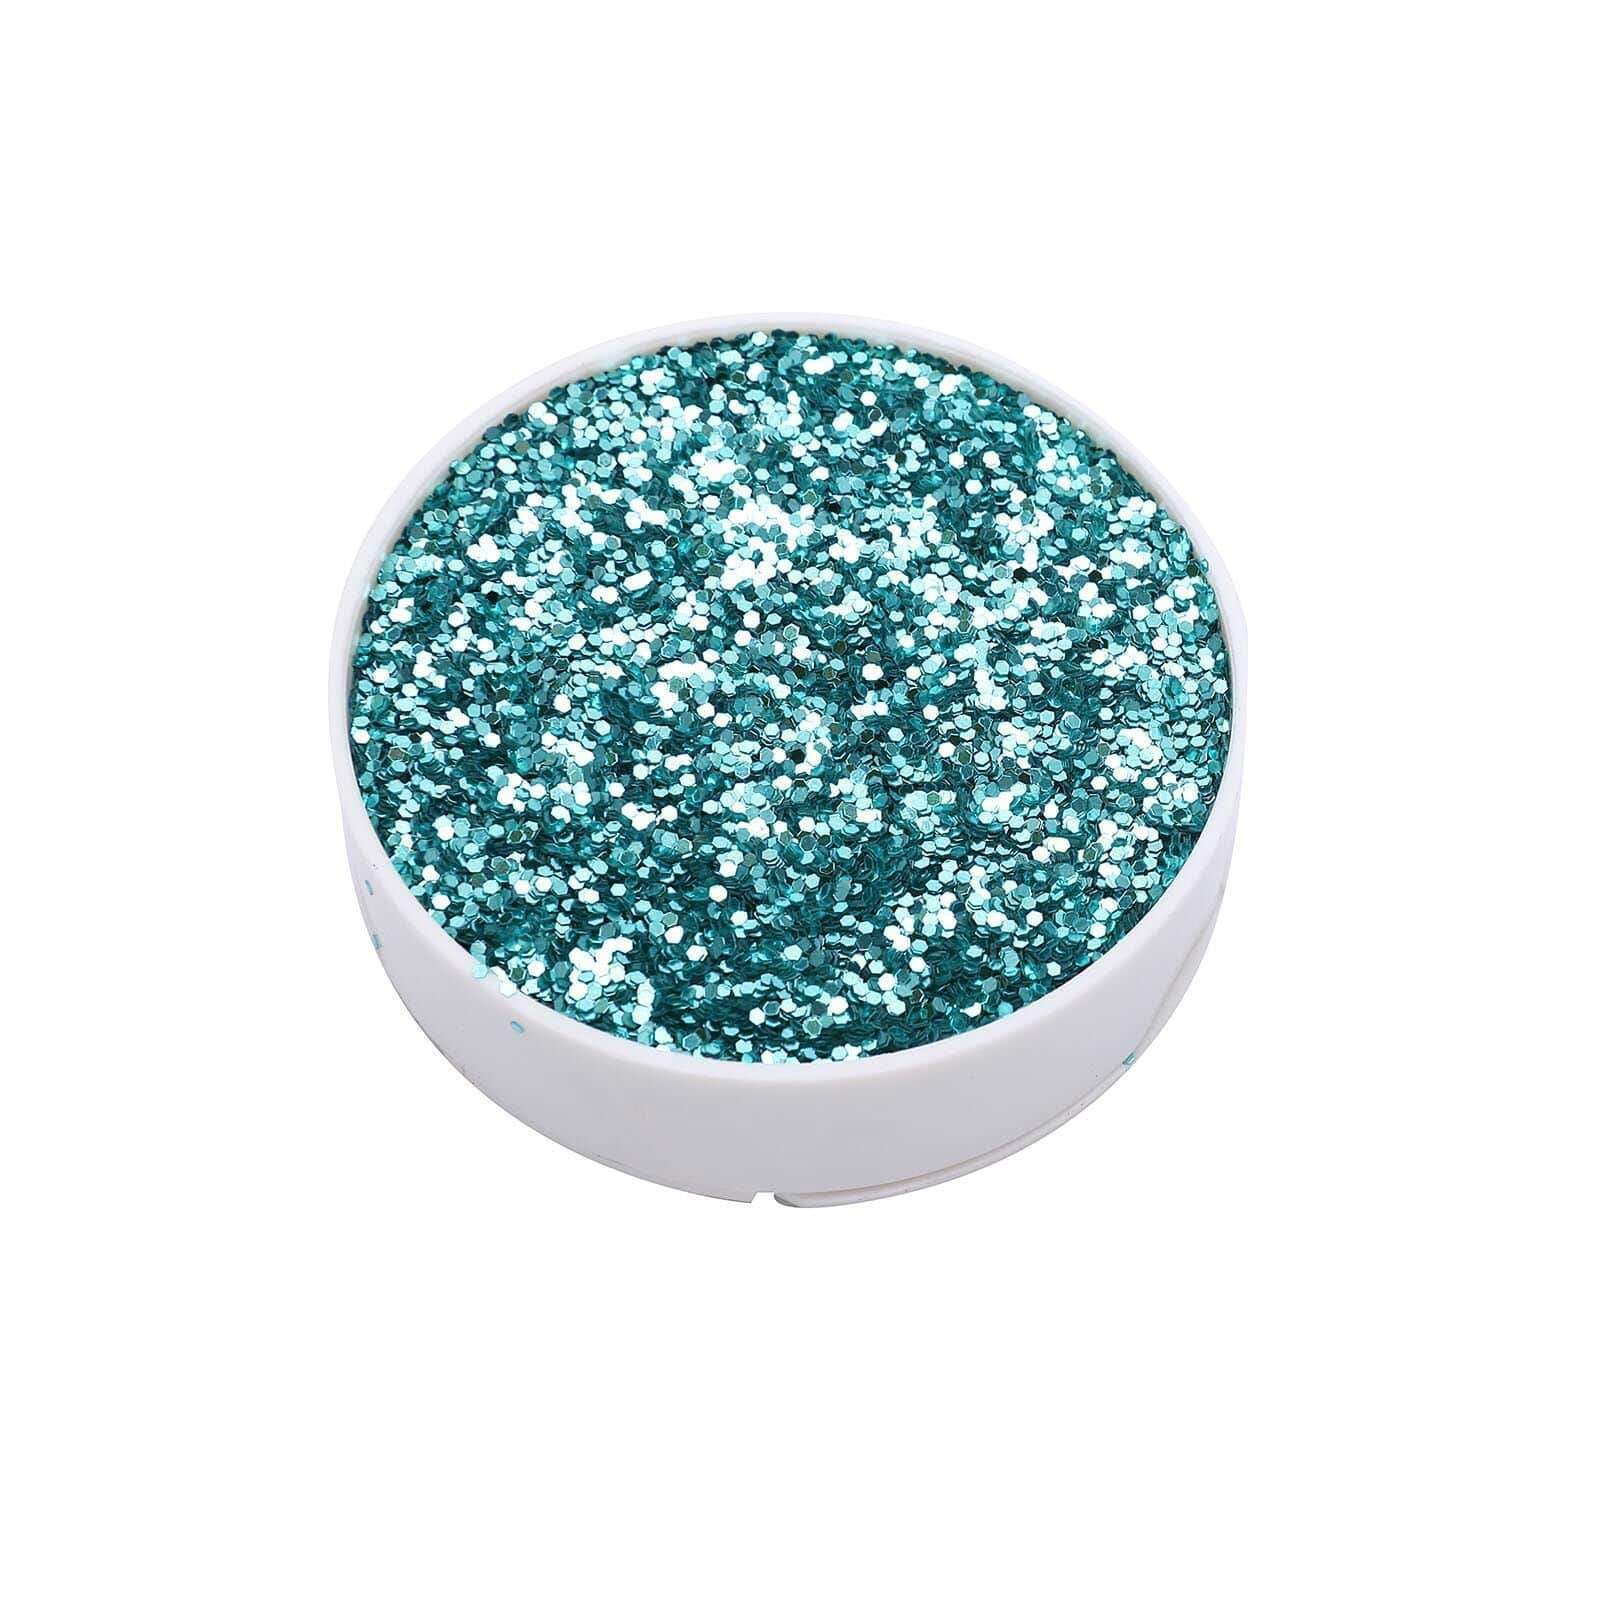 1 lb Shimmering Craft Glitter